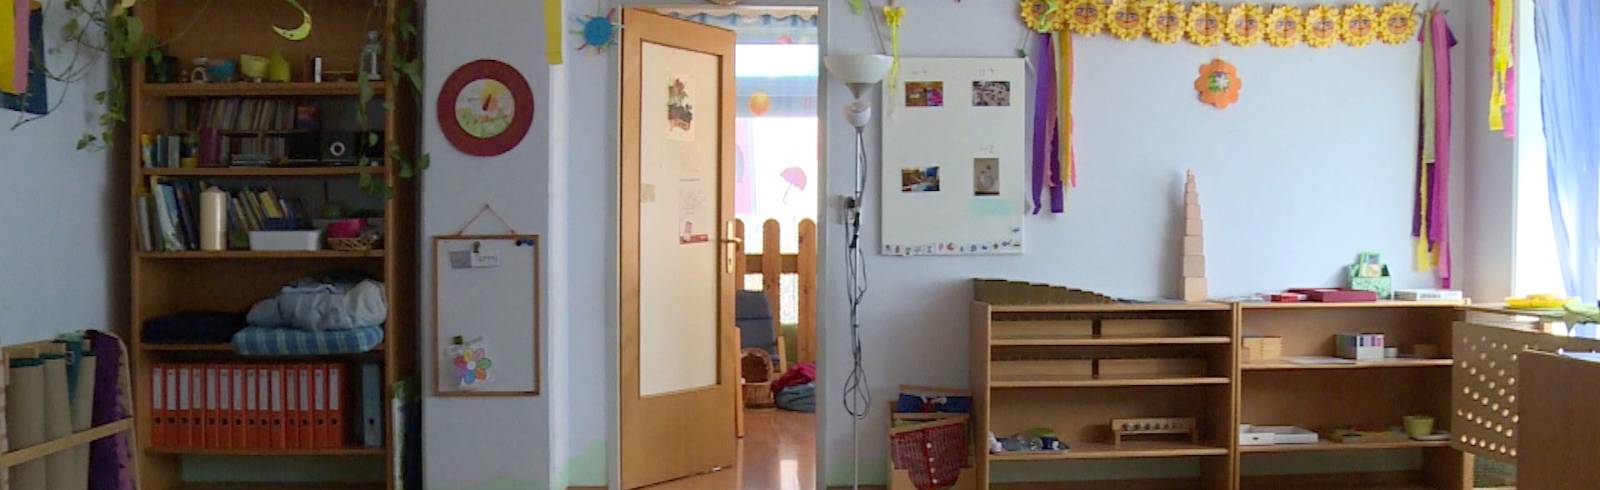 Hauptanmeldezeit für städtische Kindergärten startet